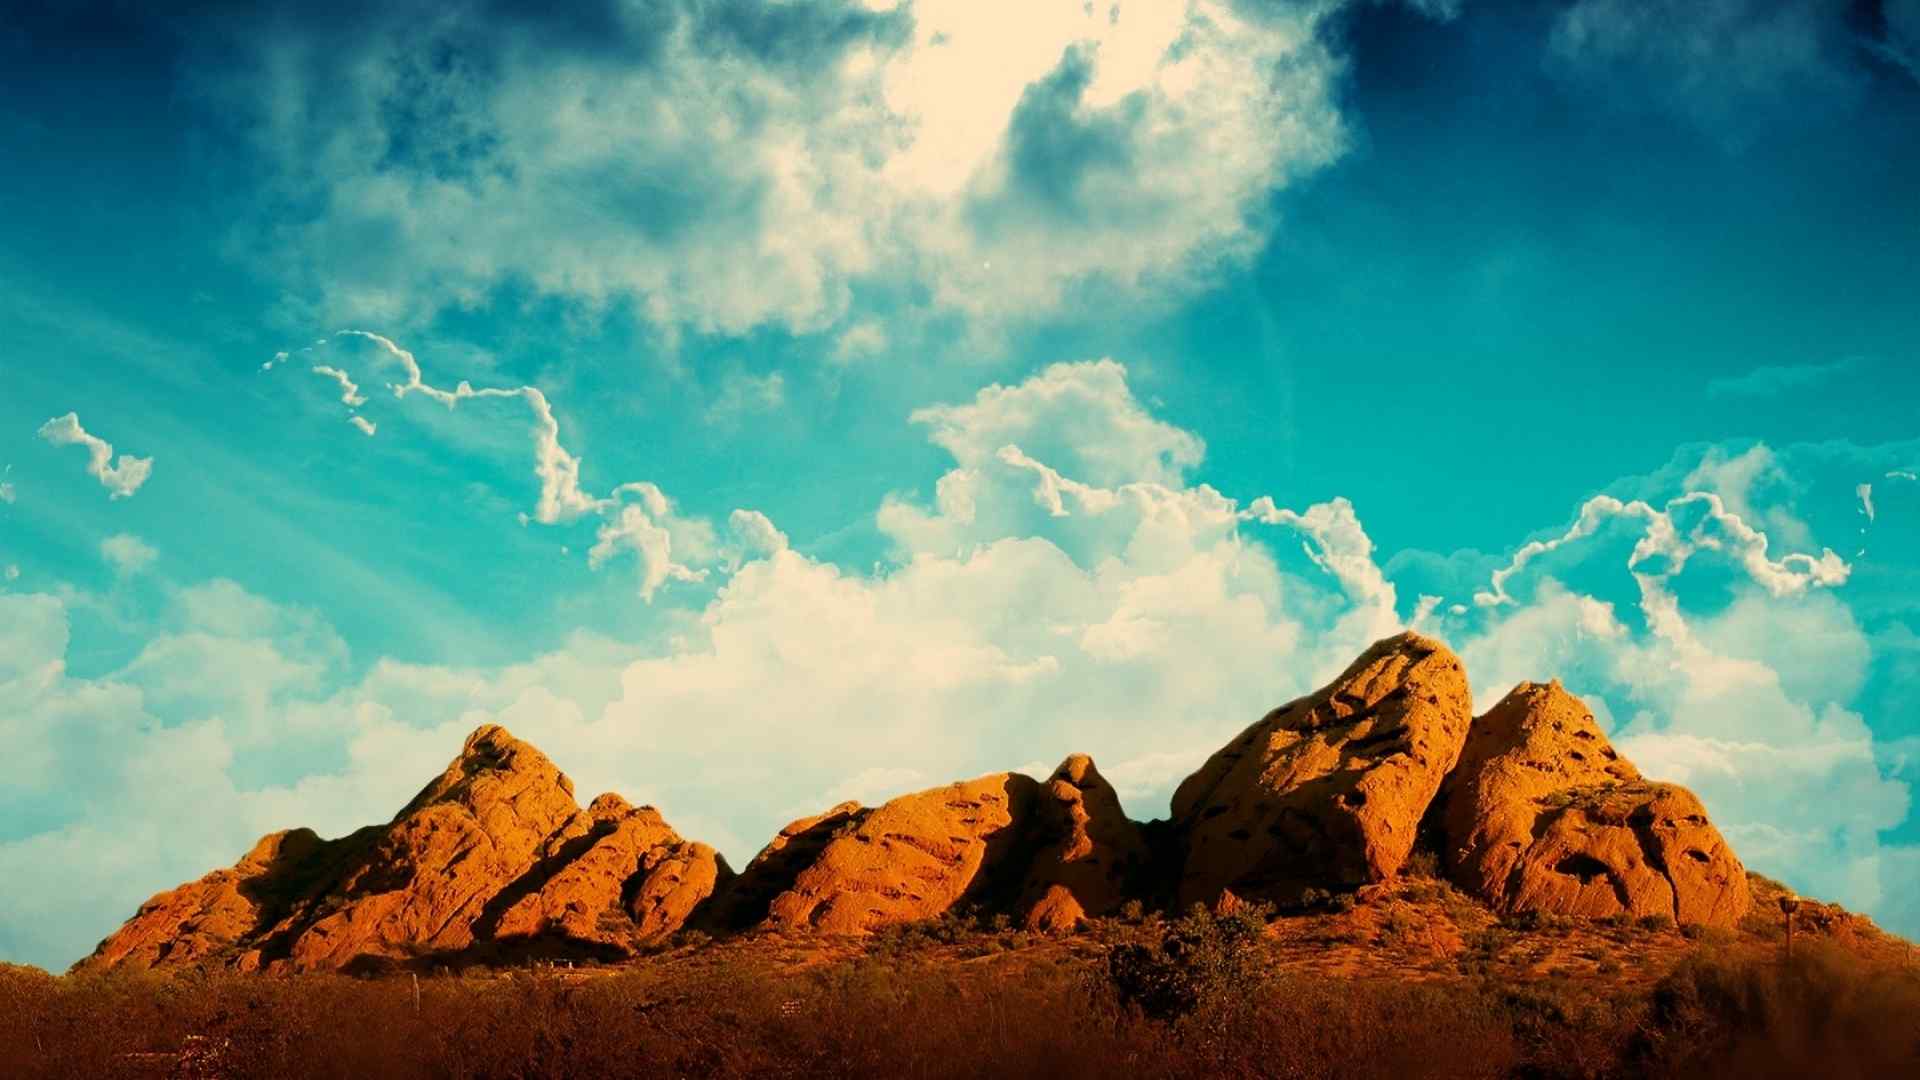 天空下的岩石沙漠自然风景桌面壁纸